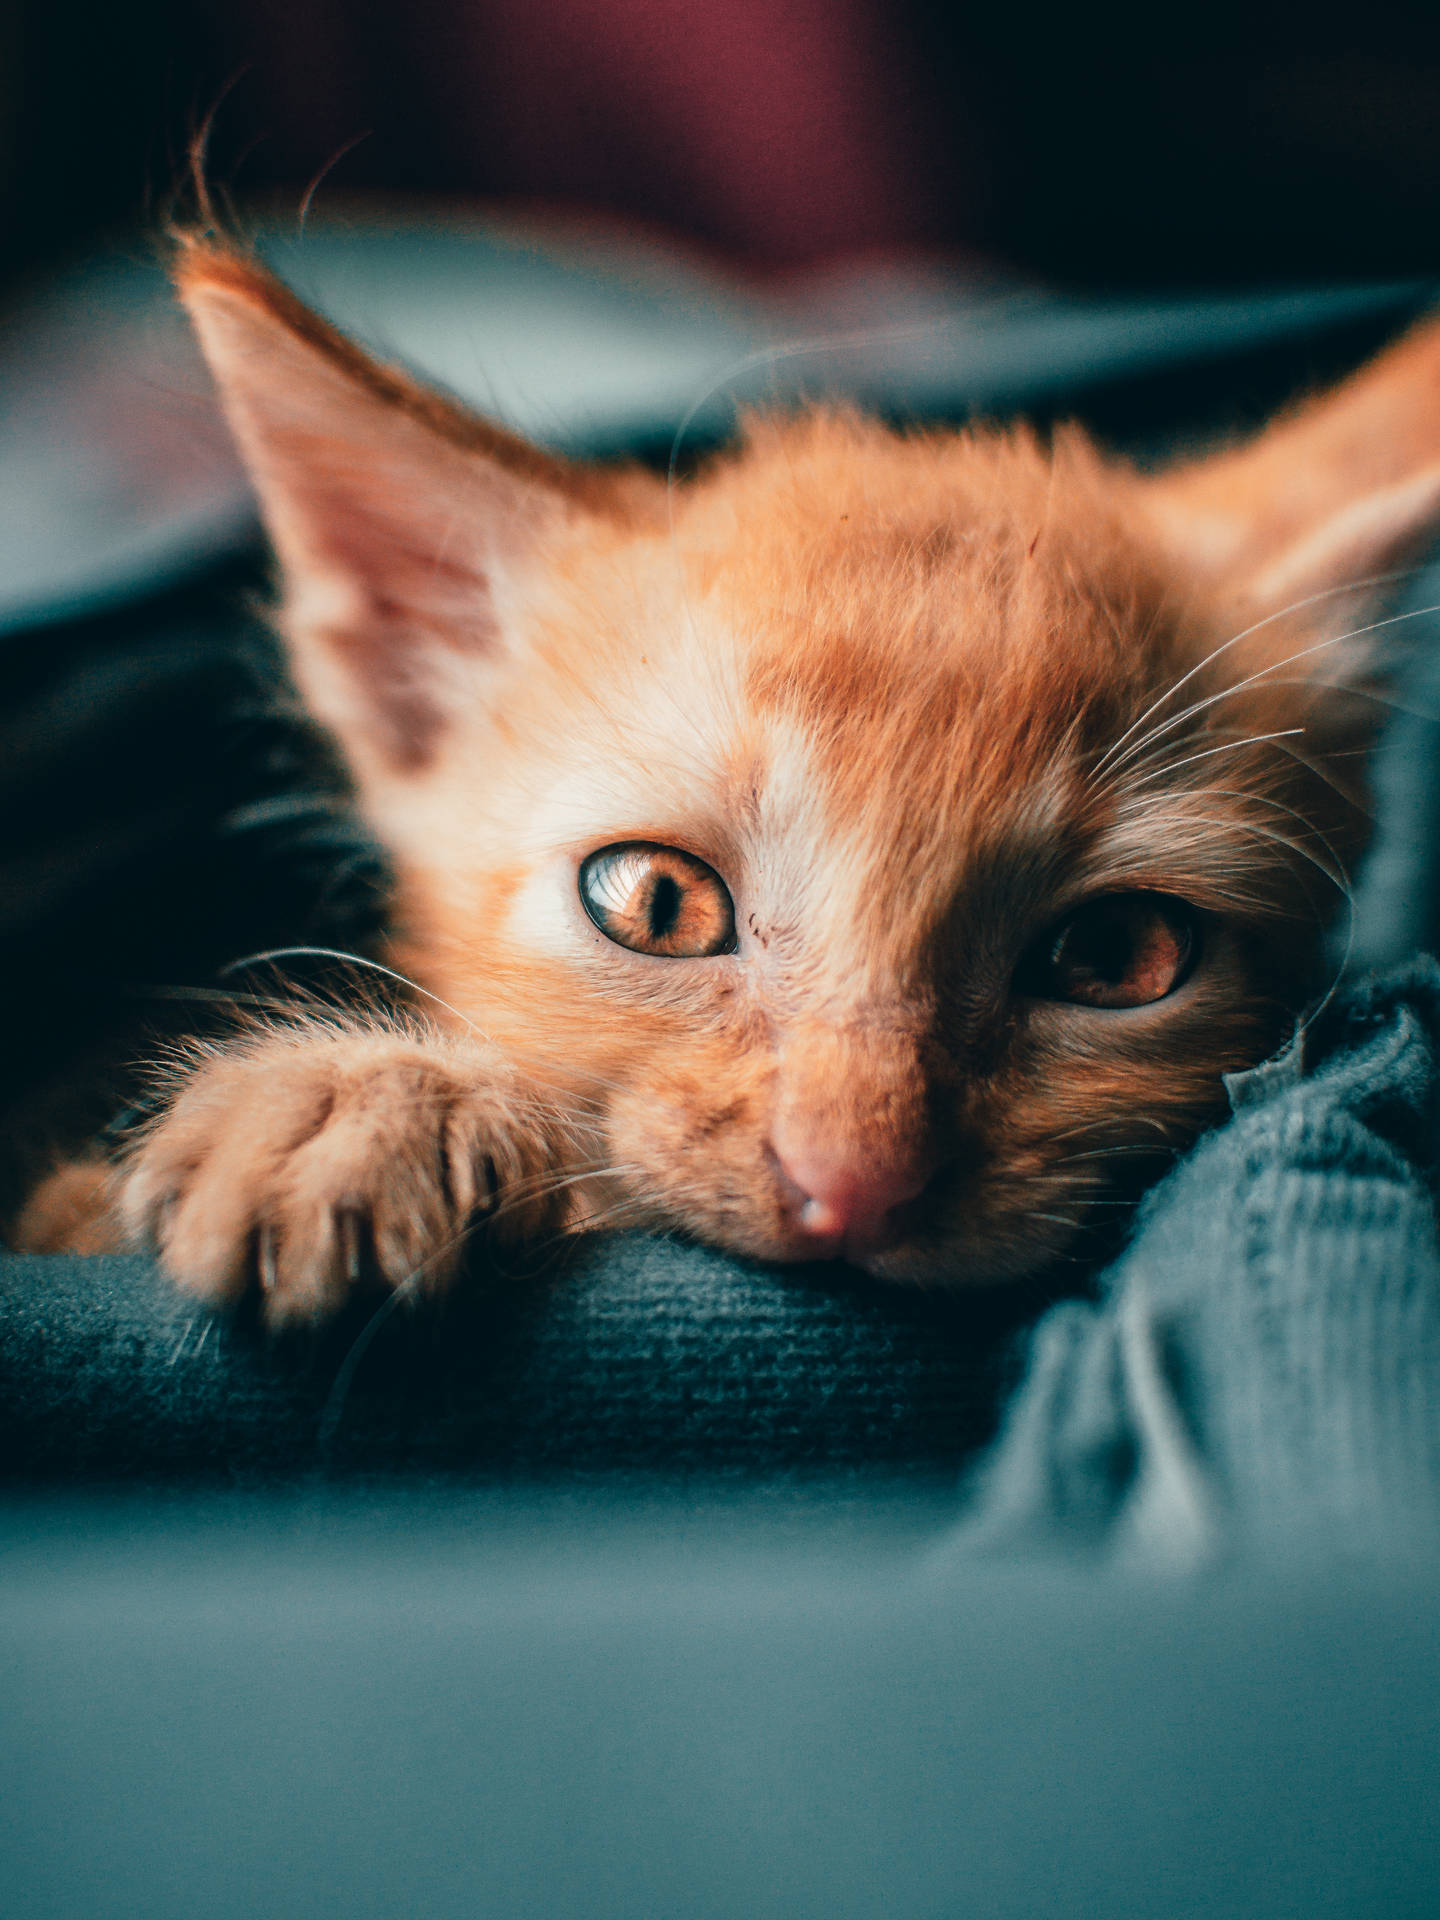 Cute Hd Image Of Orange Kitten